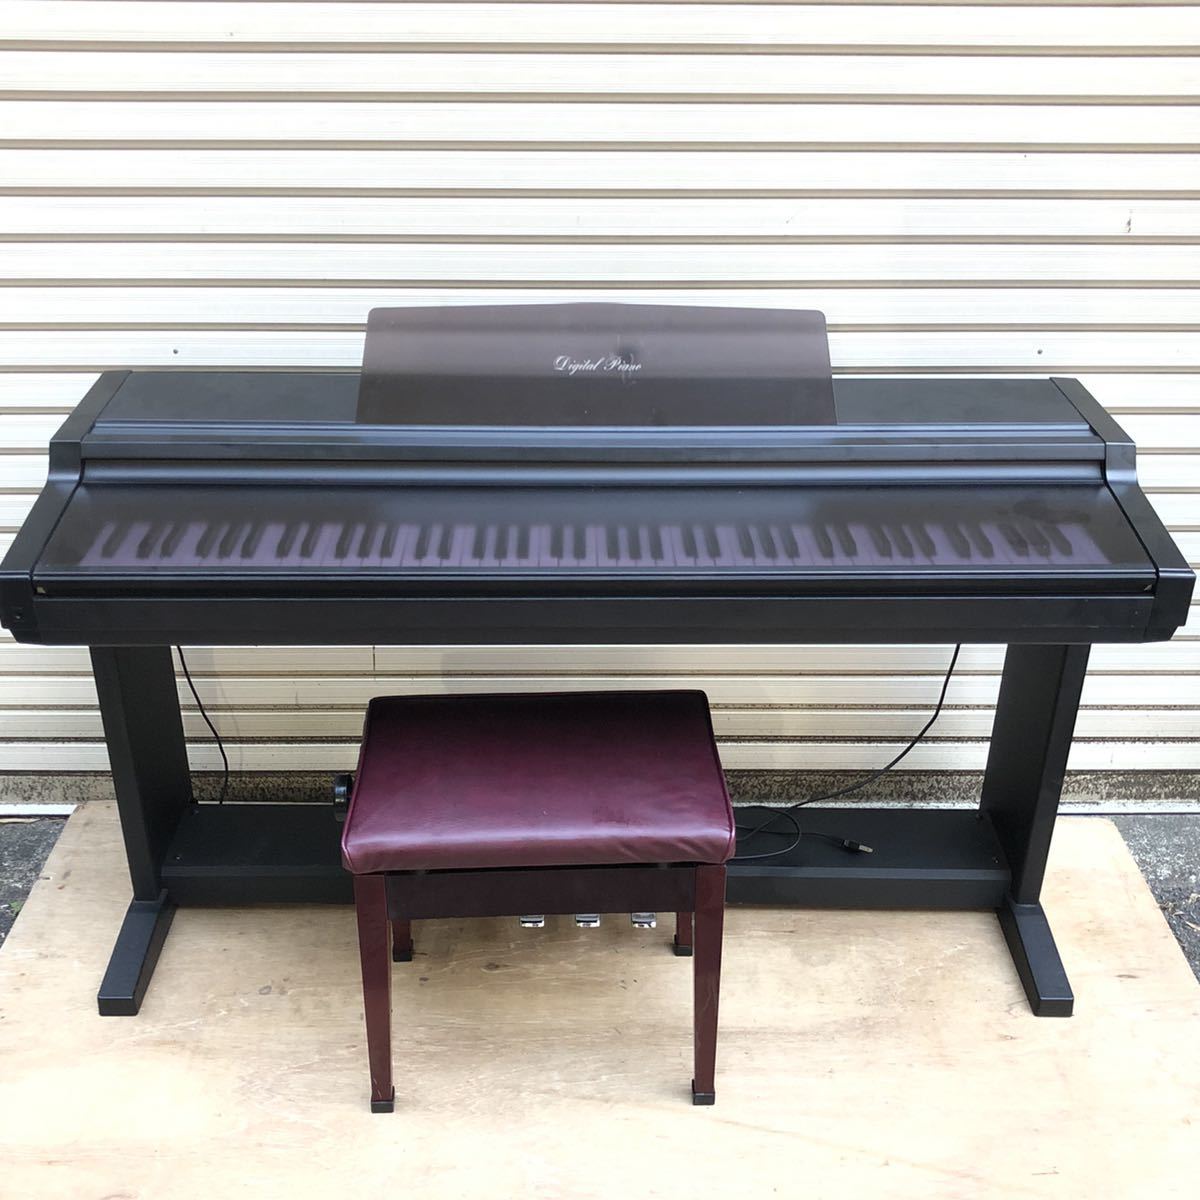 スーパーセール期間限定 KAWAI KDP75W 電子ピアノ 88鍵盤 ブラック遮音カーペット 小 セット